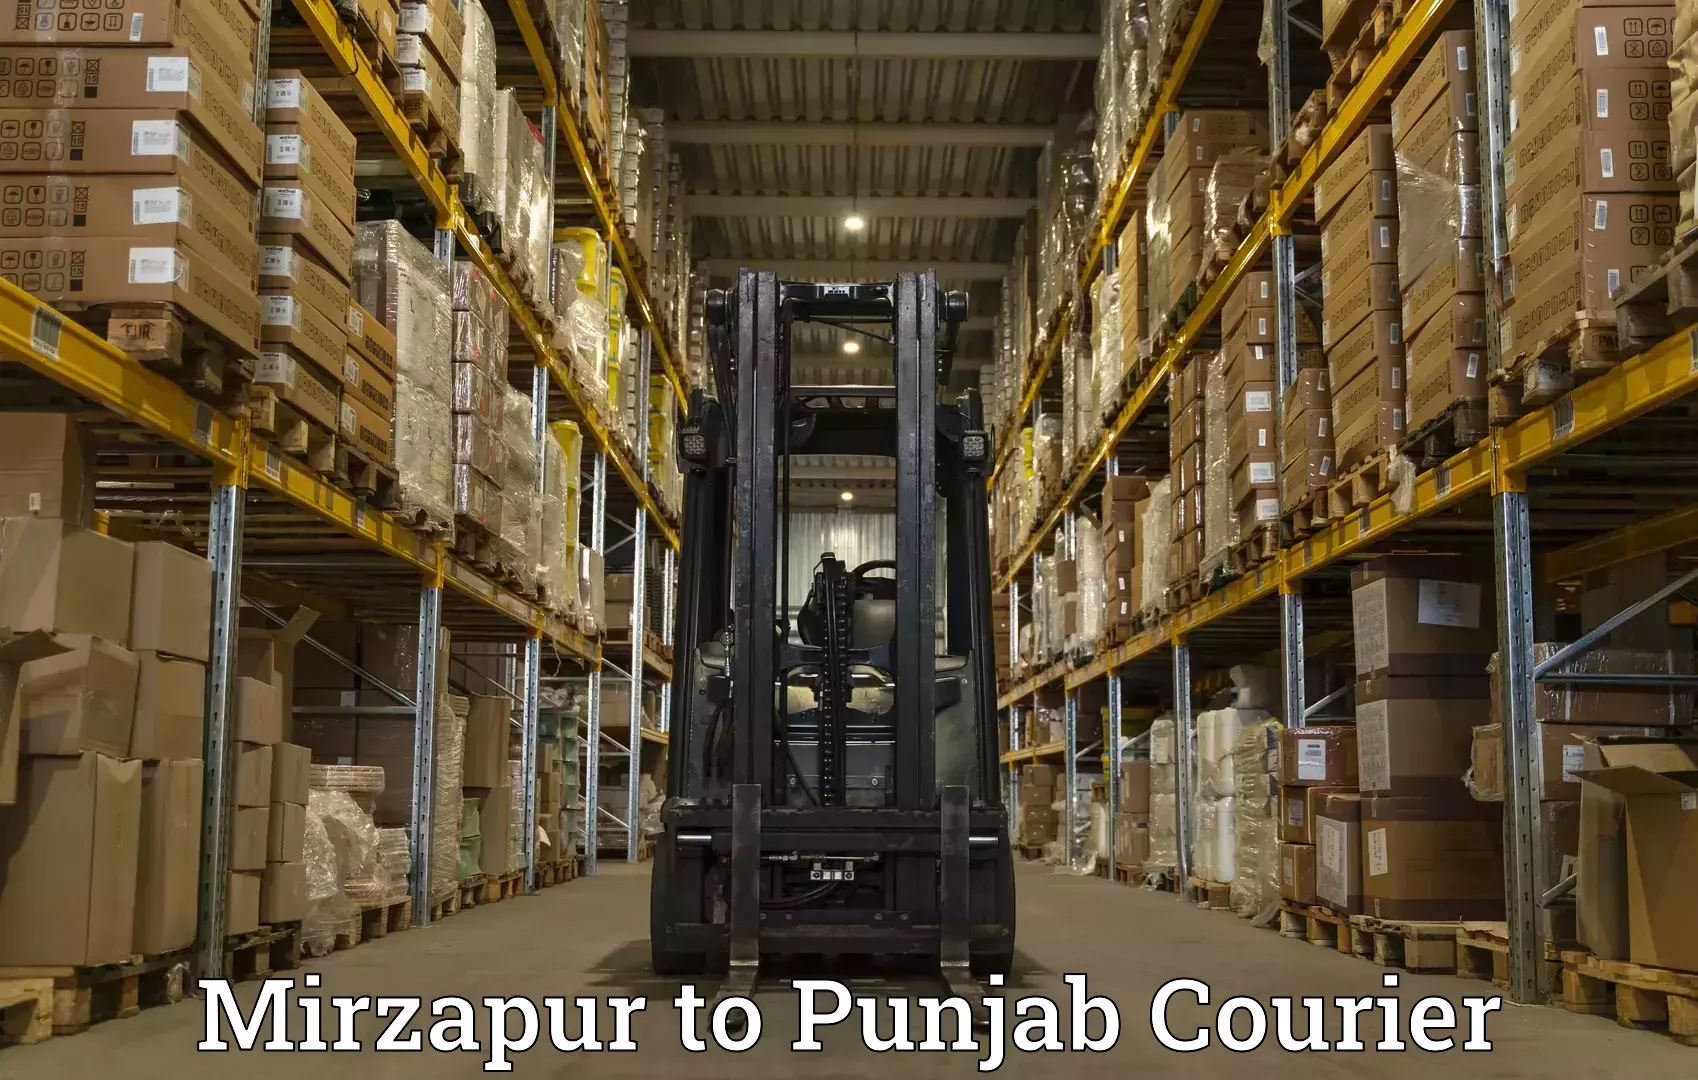 Versatile courier offerings Mirzapur to Dinanagar